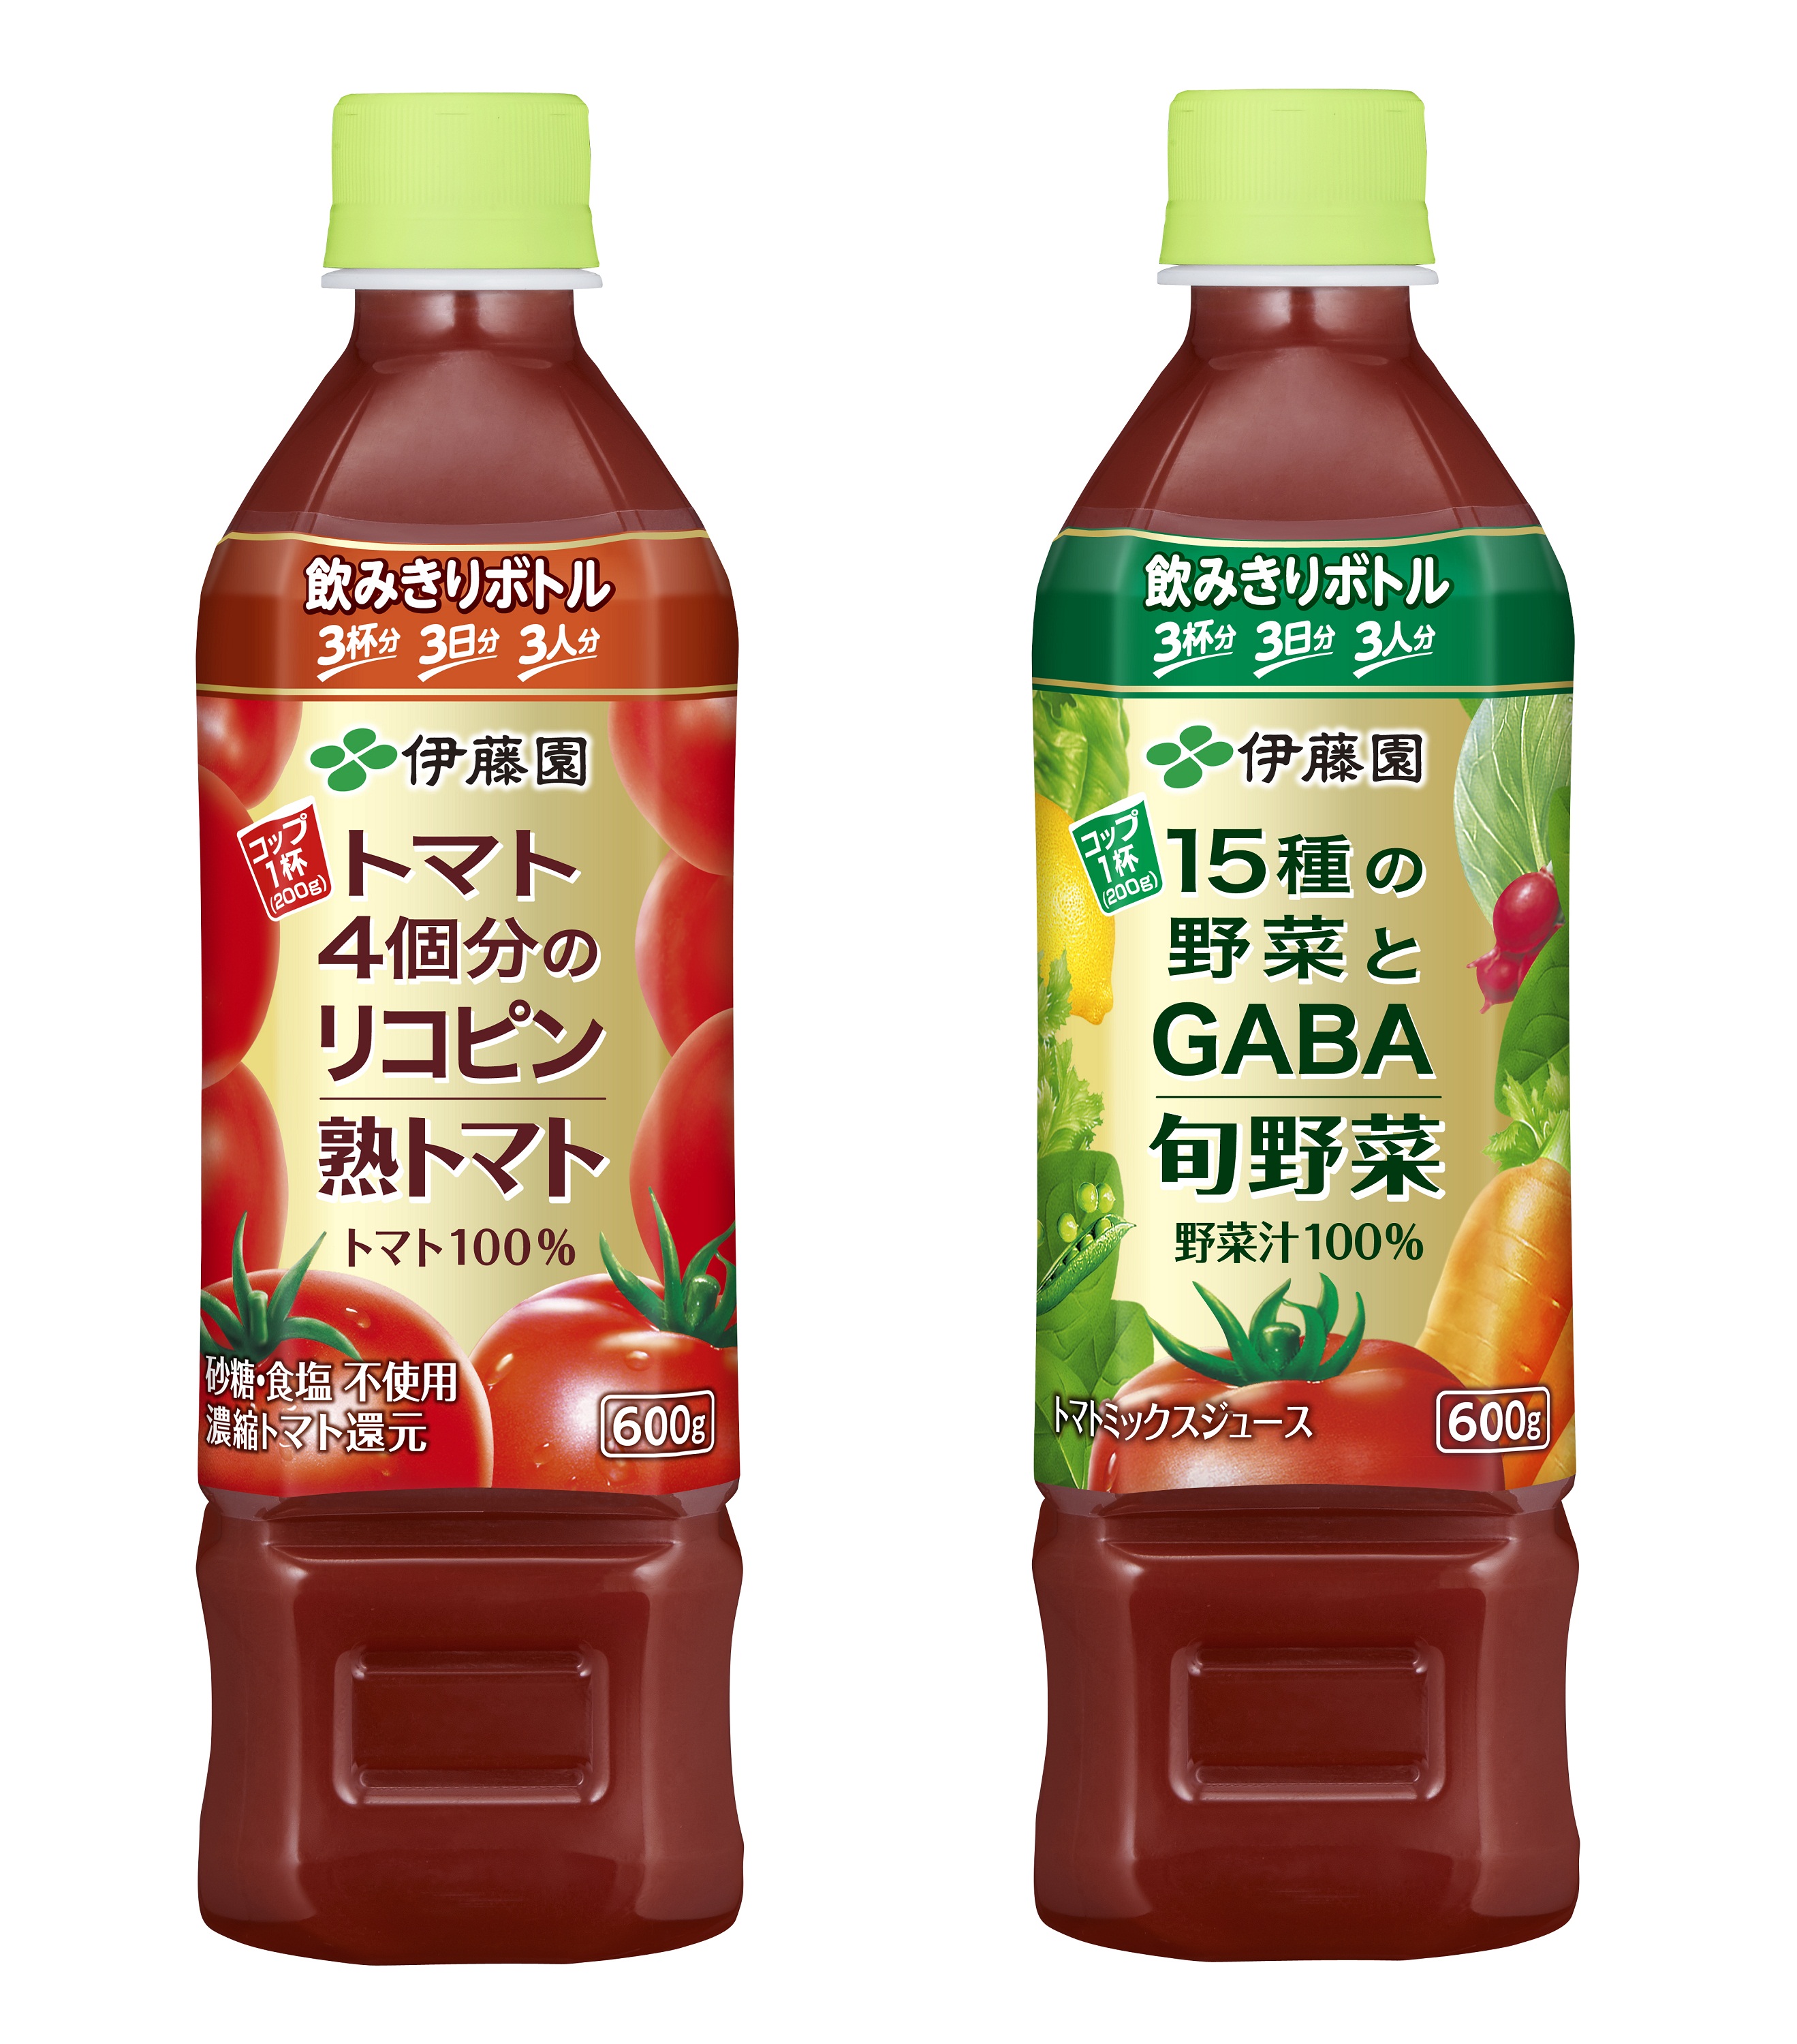 熟トマト 旬野菜 12月2日 月 販売開始 新着情報 伊藤園